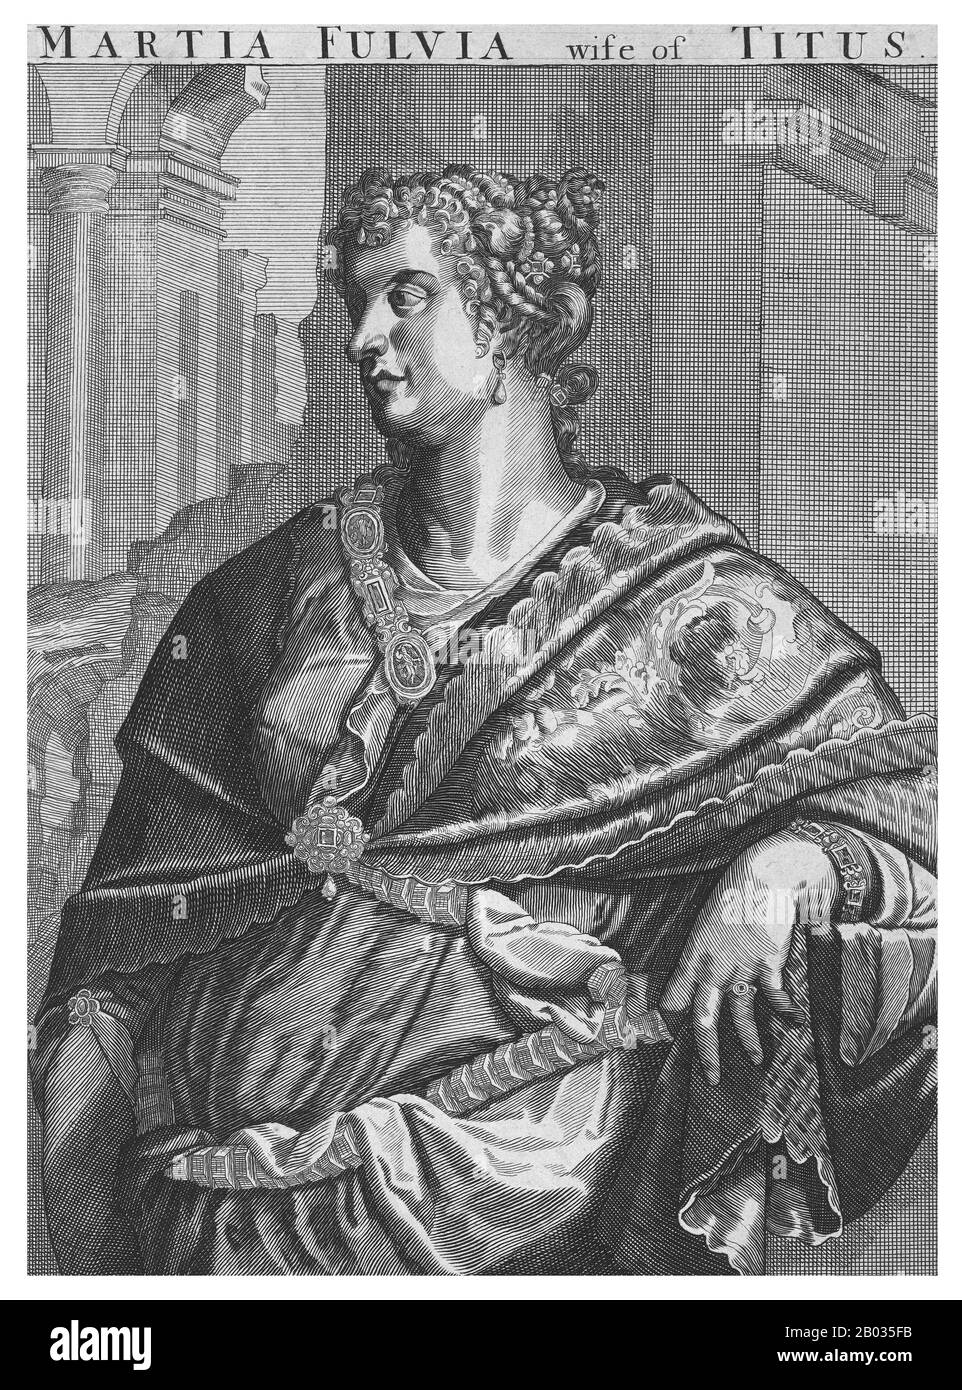 Marcia Furnilla (1. Jahrhundert) wurde in eine adelige und angesehene Familie geboren und behauptete den Abstieg vom römischen König Ancus Marcius. Furnilla war Titus' zweite und letzte Frau, die ihn 63 CE heiratete. Furnilla wurde als "sehr gut verbundene" Frau beschrieben und gebar Titus eine Tochter im Jahr 64 CE, Julia Flavia. Wie Titus' erste Ehe war auch seine Zeit mit Furnilla kurz, da Furnillas Familie nach dem Scheitern der pisonischen Verschwörung im Jahr 65 CE mit den Gegnern Neros verbunden war. Titus ließ sich von ihr scheiden und wollte nicht mit einem der möglichen Plotter in Verbindung gebracht werden und nahm seine Tochter mit. Stockfoto